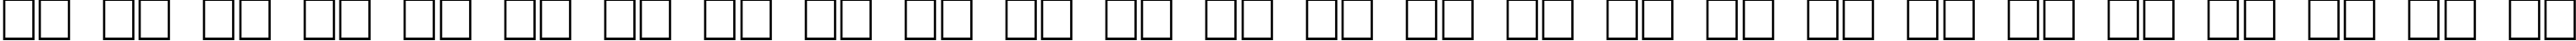 Пример написания английского алфавита шрифтом Burlak